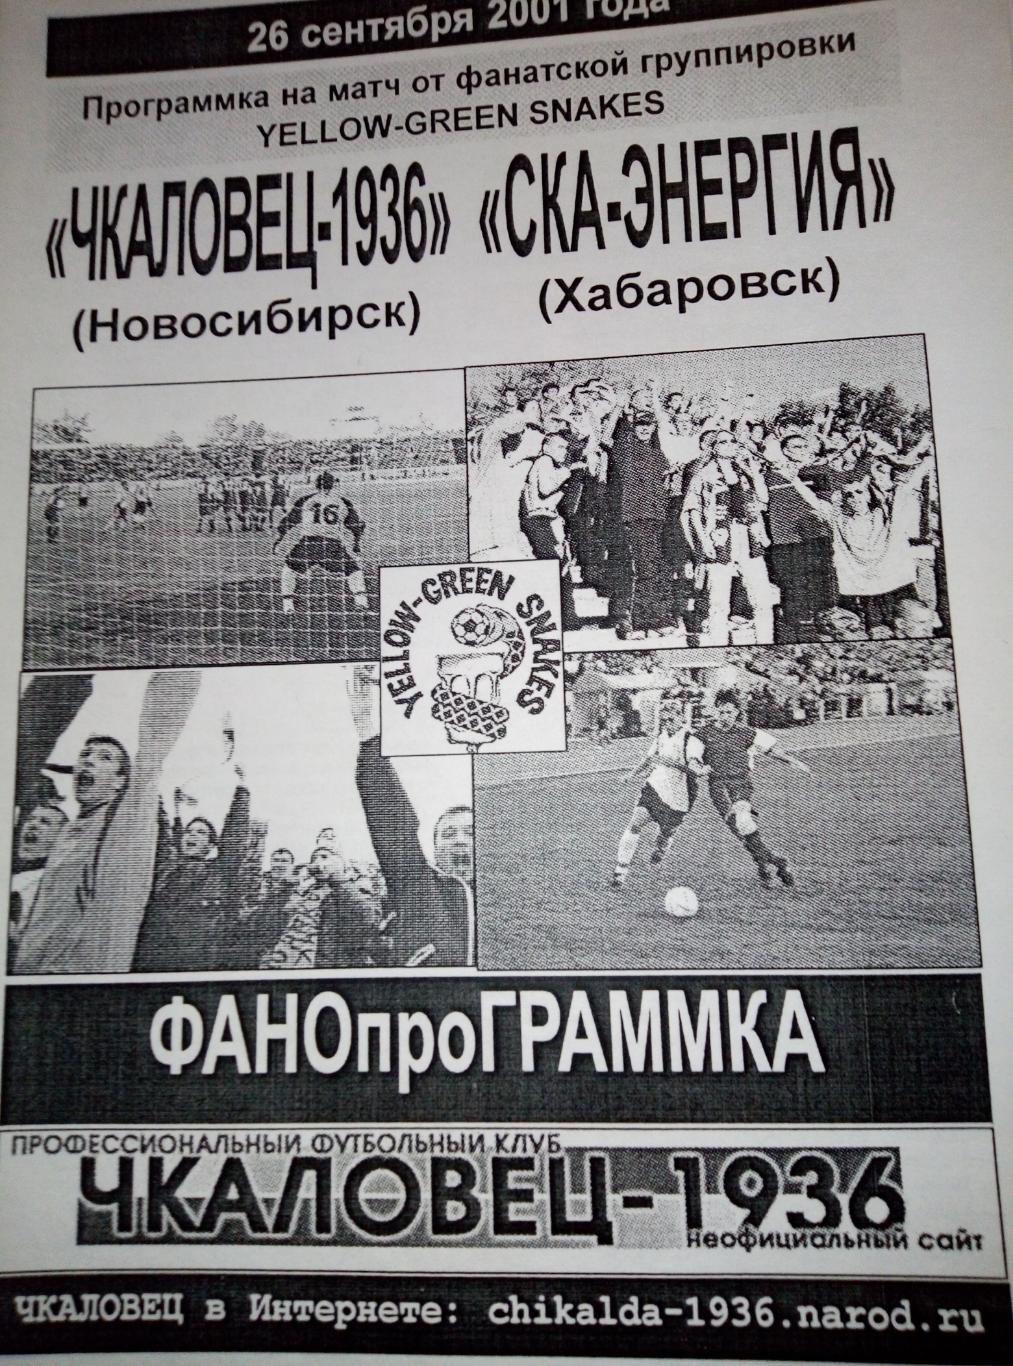 Чкаловец-1936 Новосибирск - СКА Хабаровск - 26.09.2001 (изд. Фан-групп)